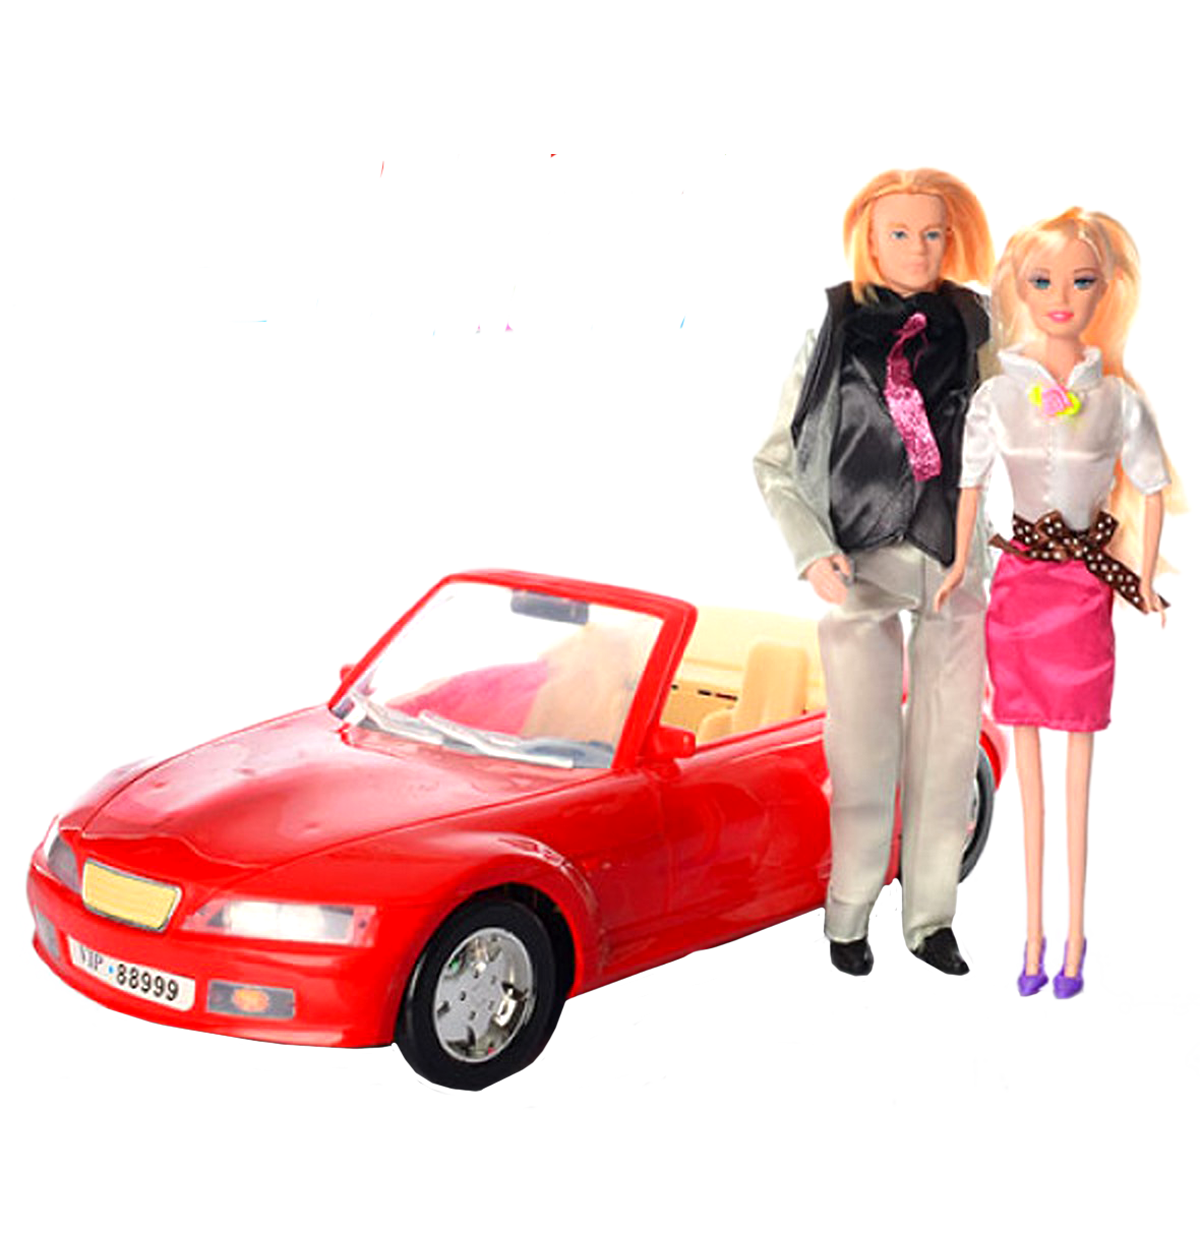 Семья кукол с машиной